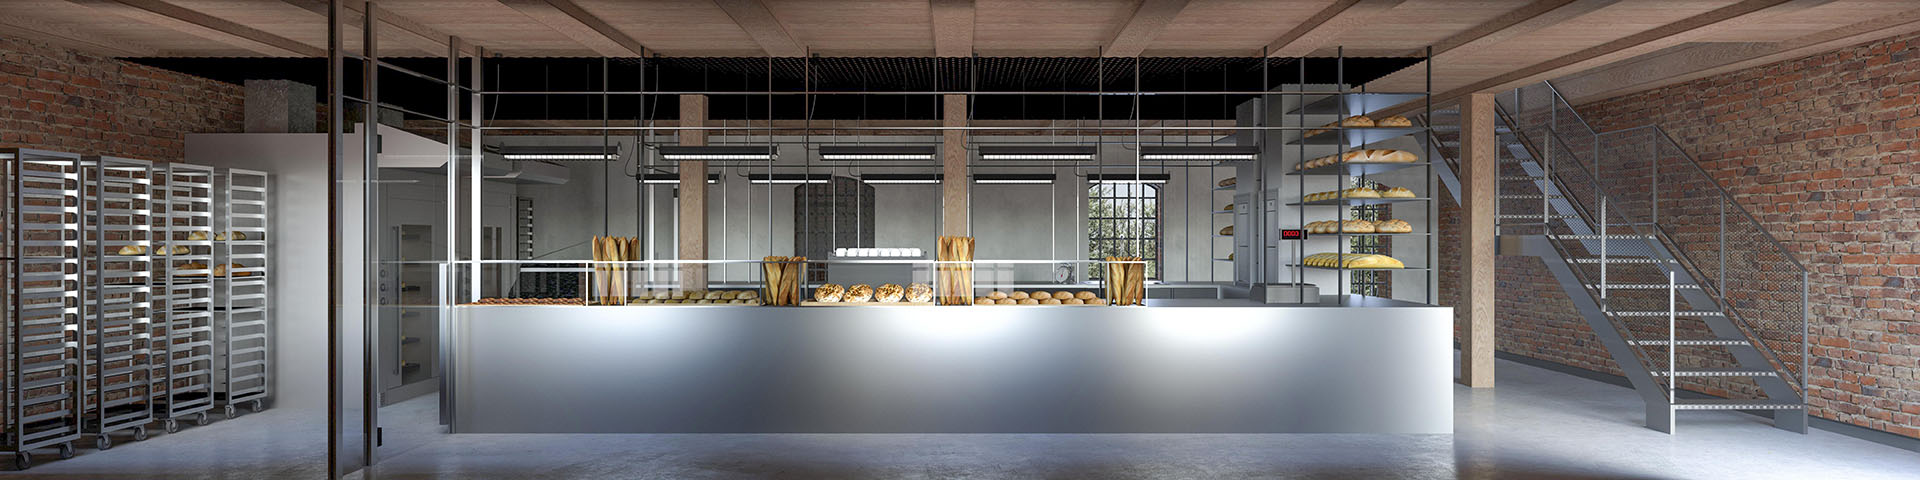 Wizualizacja wnętrza gastronomicznego - połączenie cegły i stolarki z bielą i elementami stalowymi.